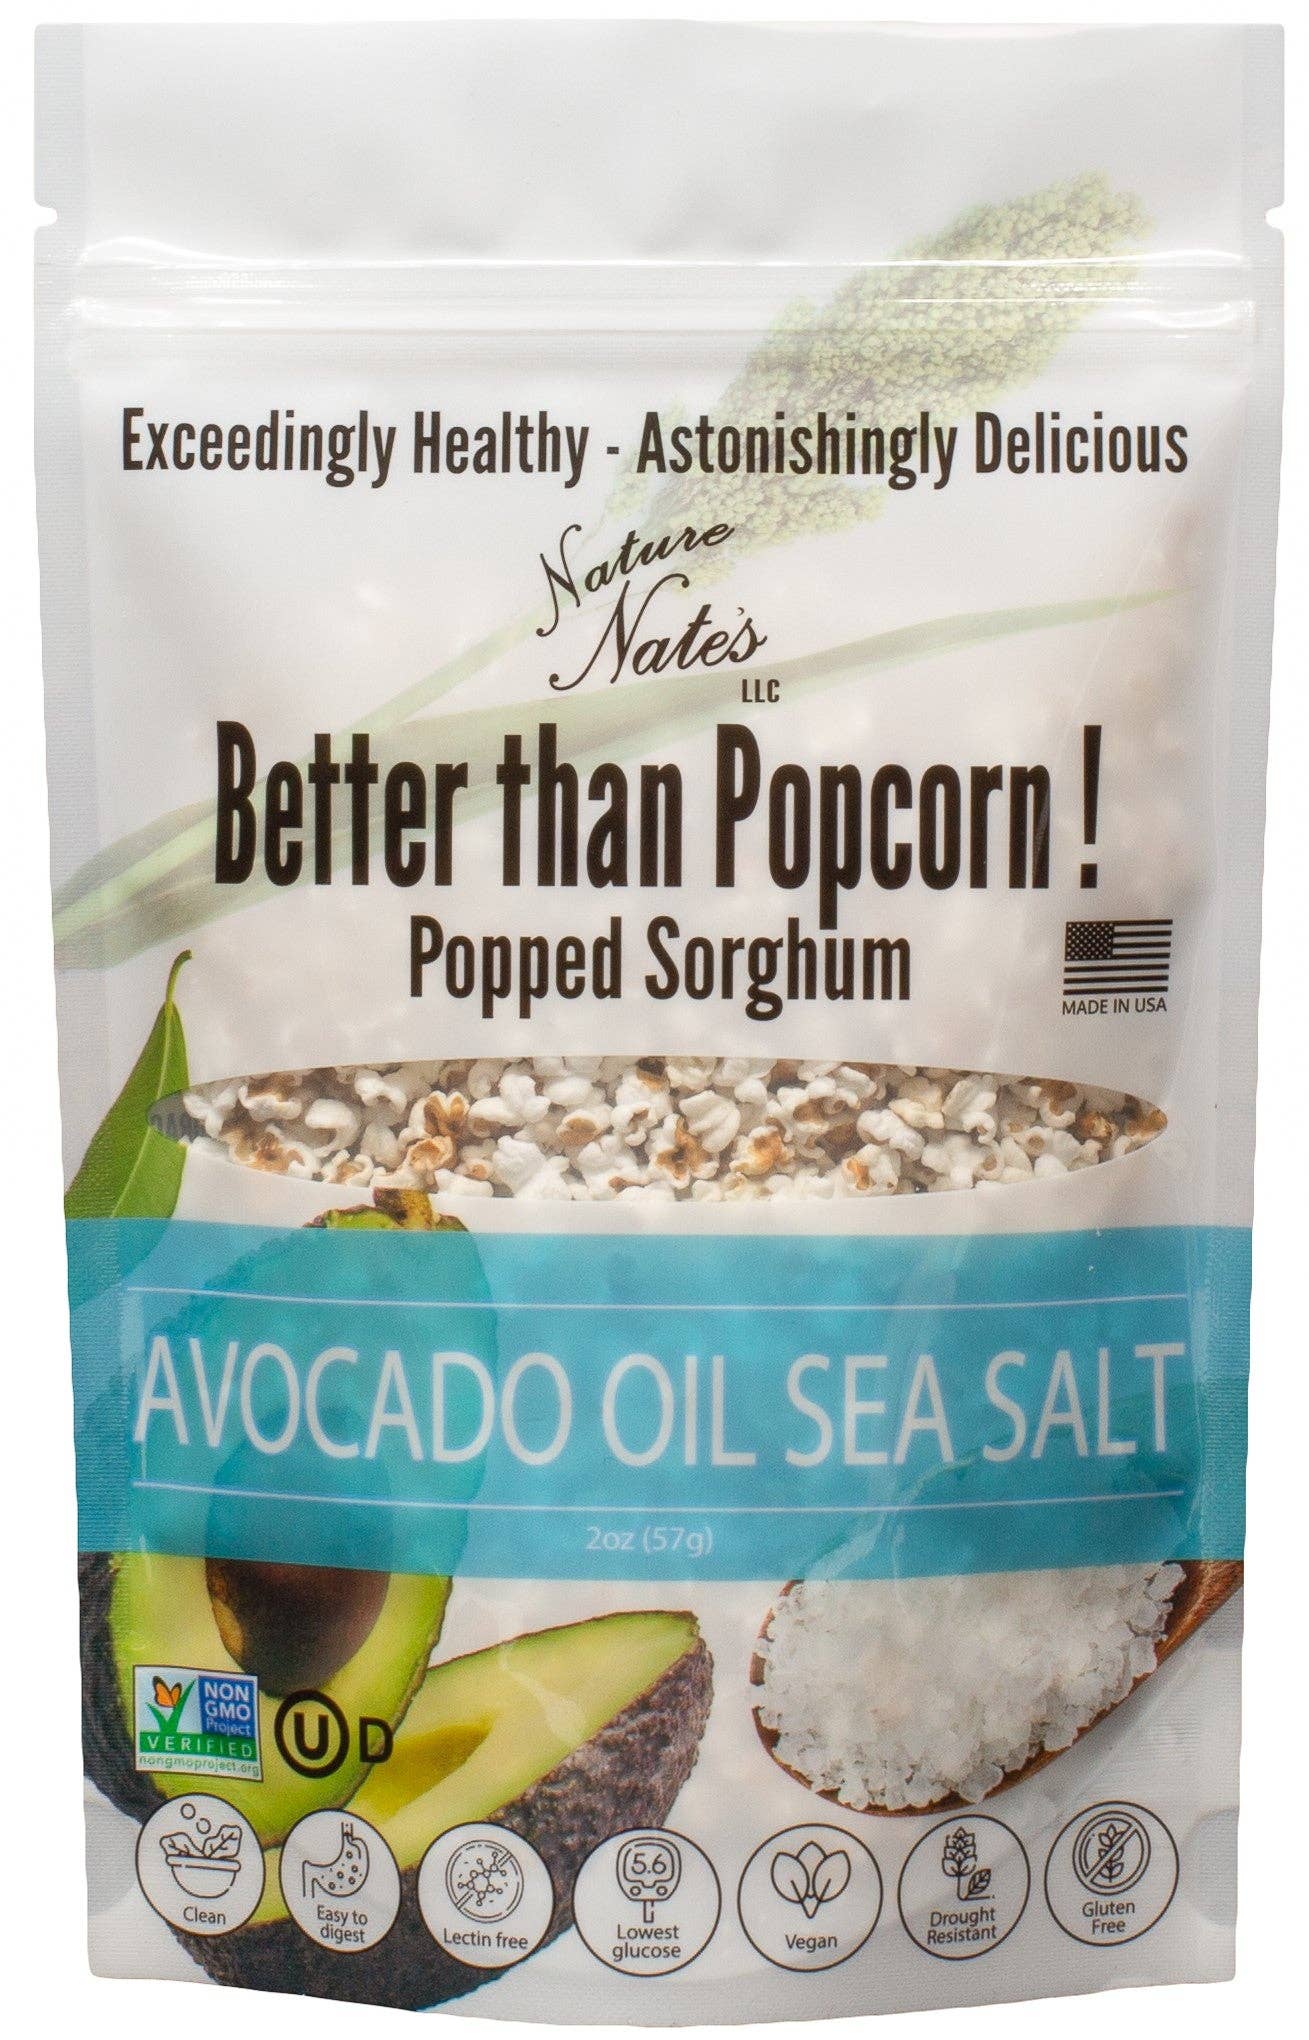 Popped Sorghum Avocado Oil  & Sea Salt 5 OZ